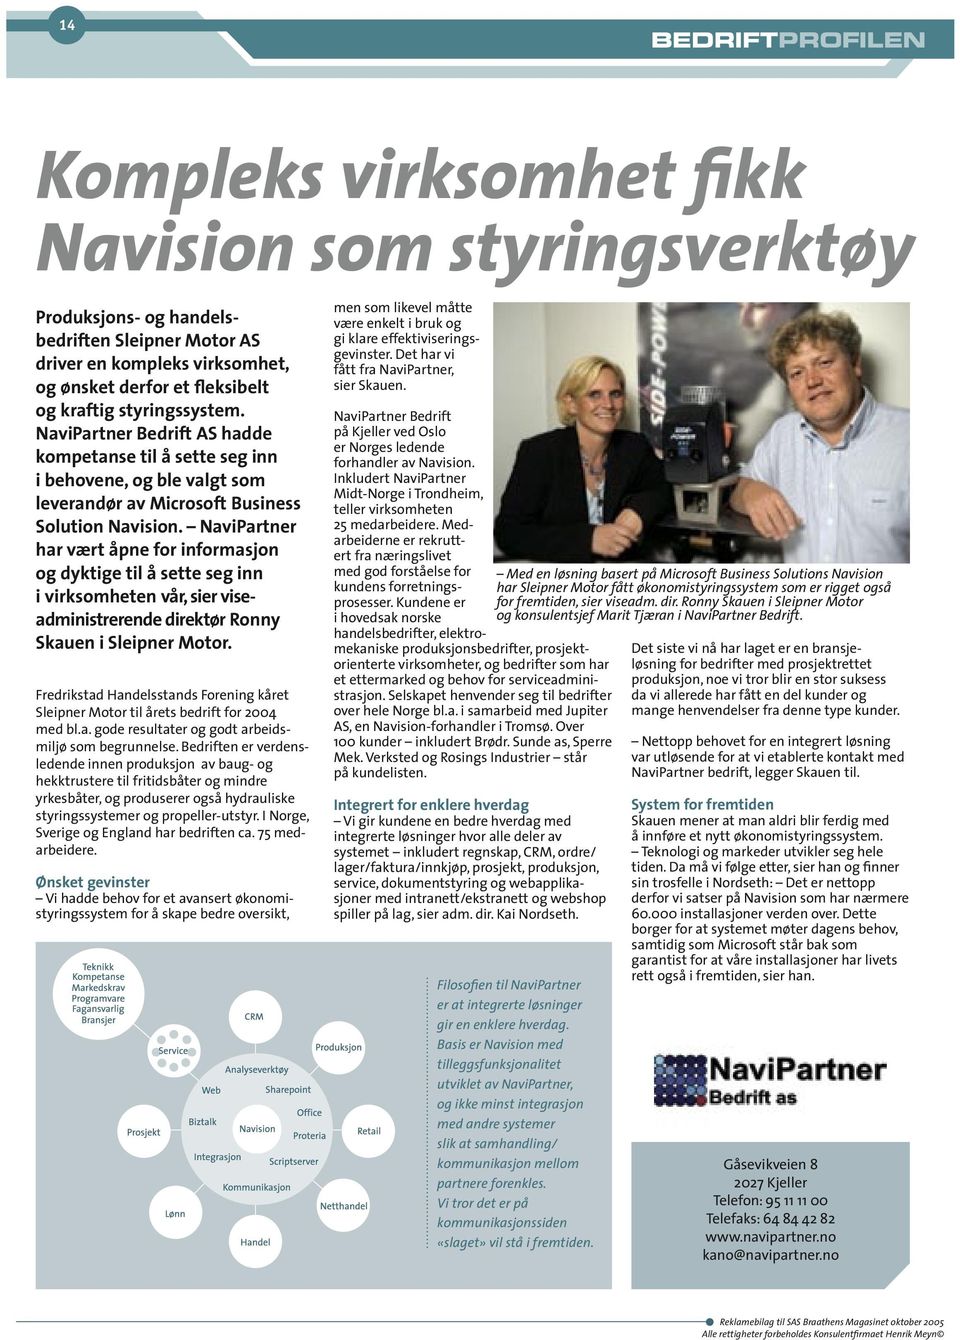 NaviPartner har vært åpne for informasjon og dyktige til å sette seg inn i virksomheten vår, sier viseadministrerende direktør Ronny Skauen i Sleipner Motor.